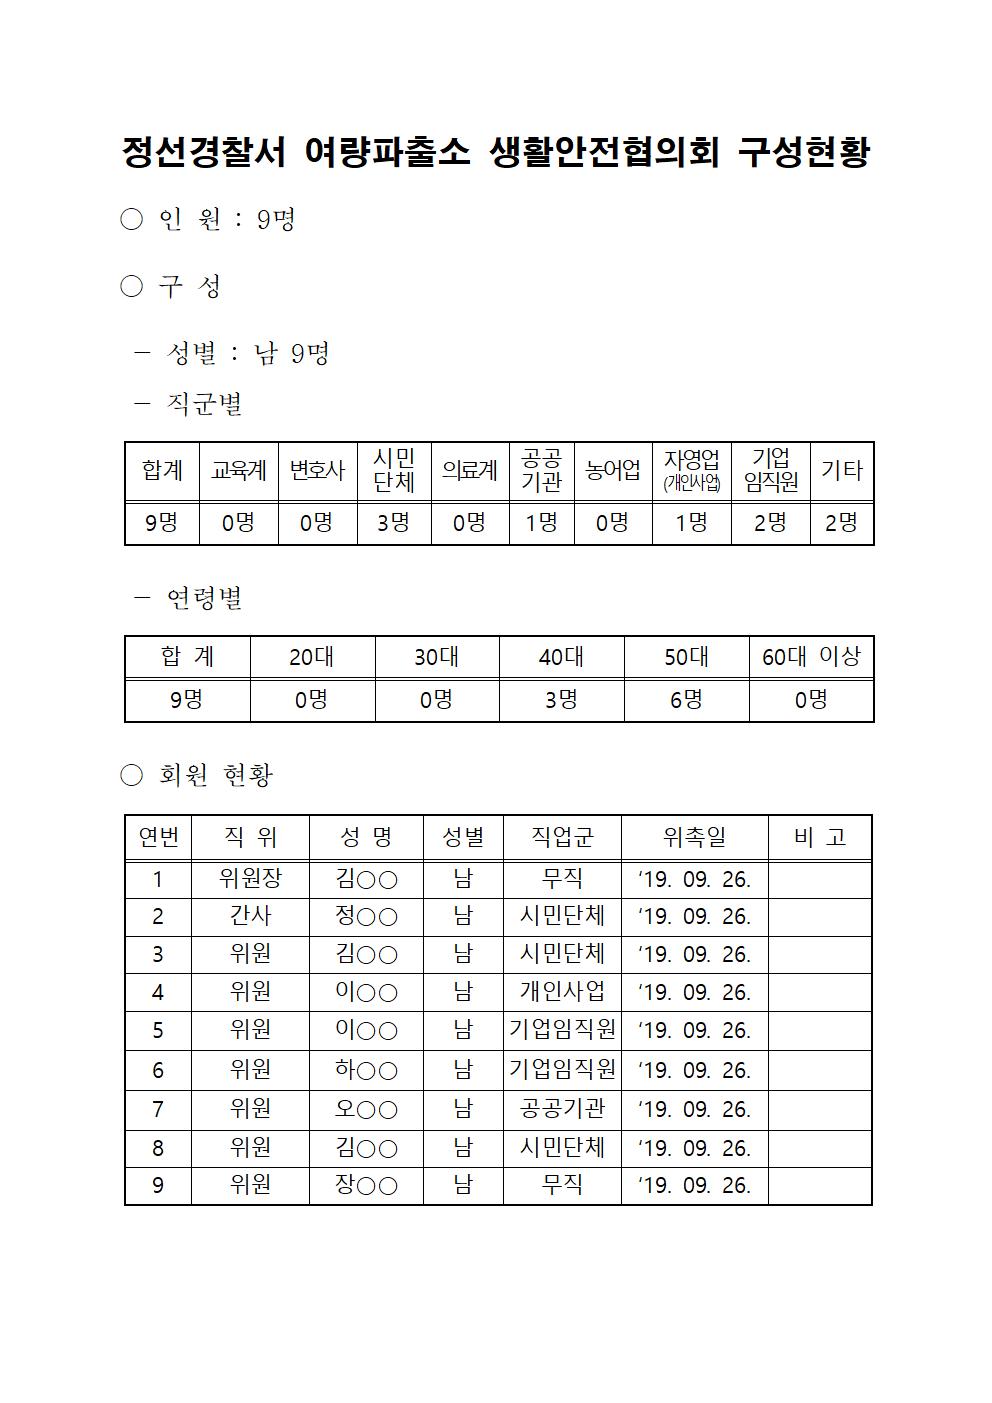 정선경찰서 생활안전협의회 구성 현황-여량생활안전협의회 명단(완료)001